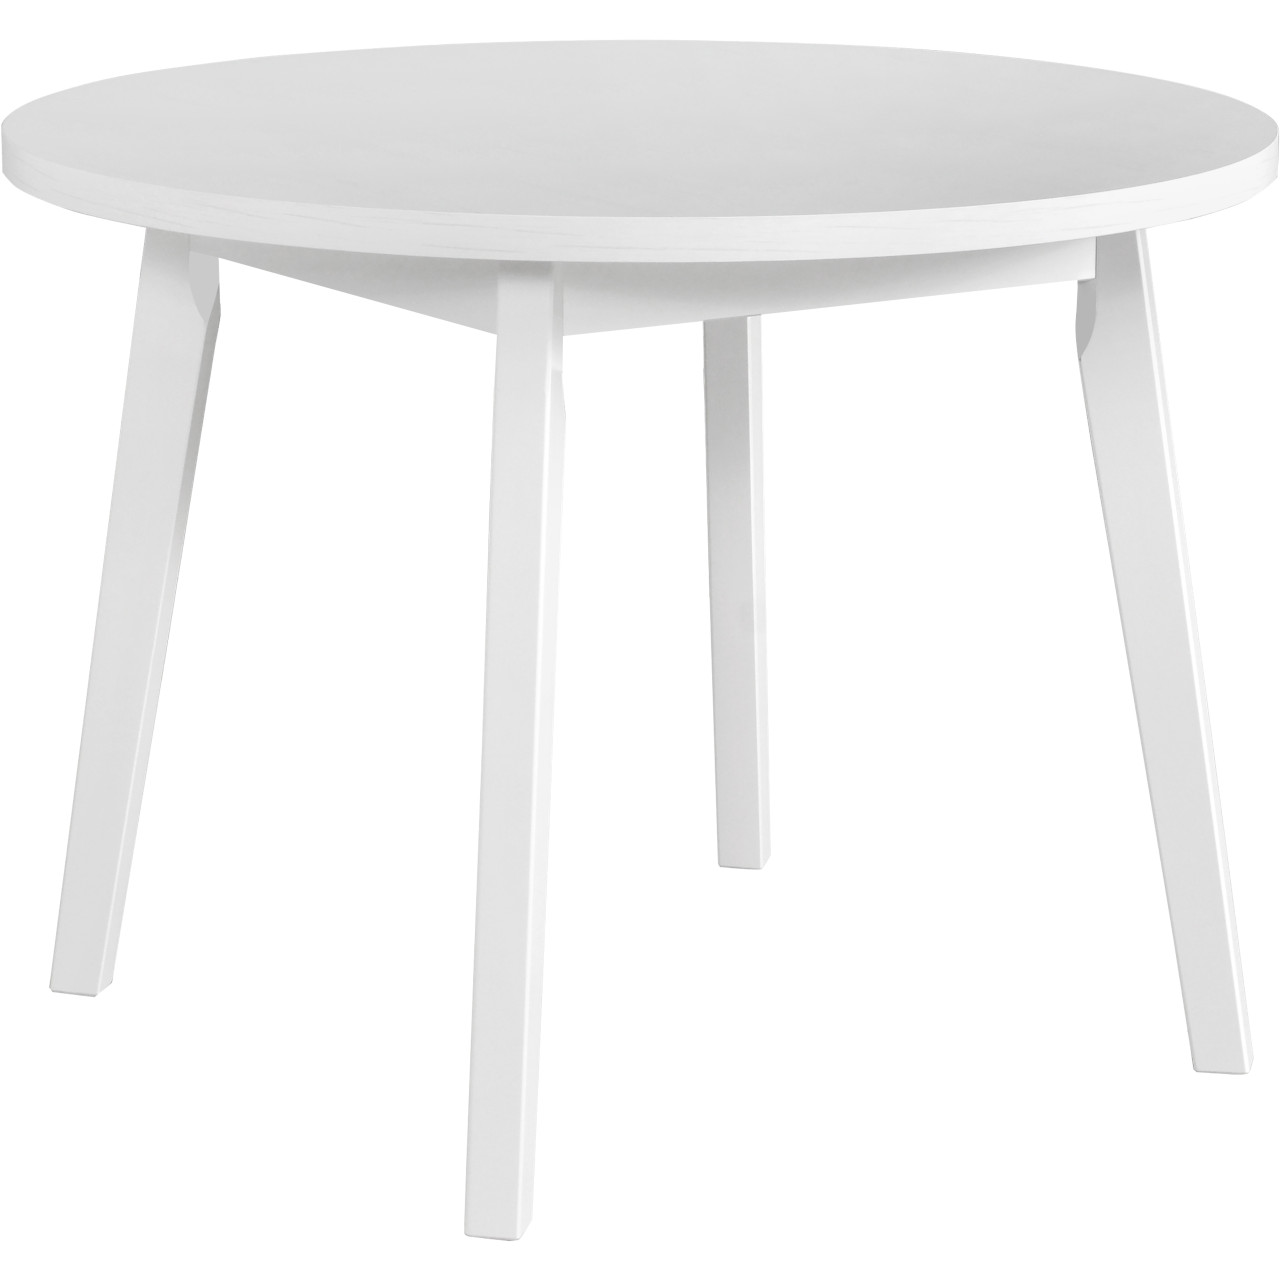 Table OSLO 3 100x100 white laminate